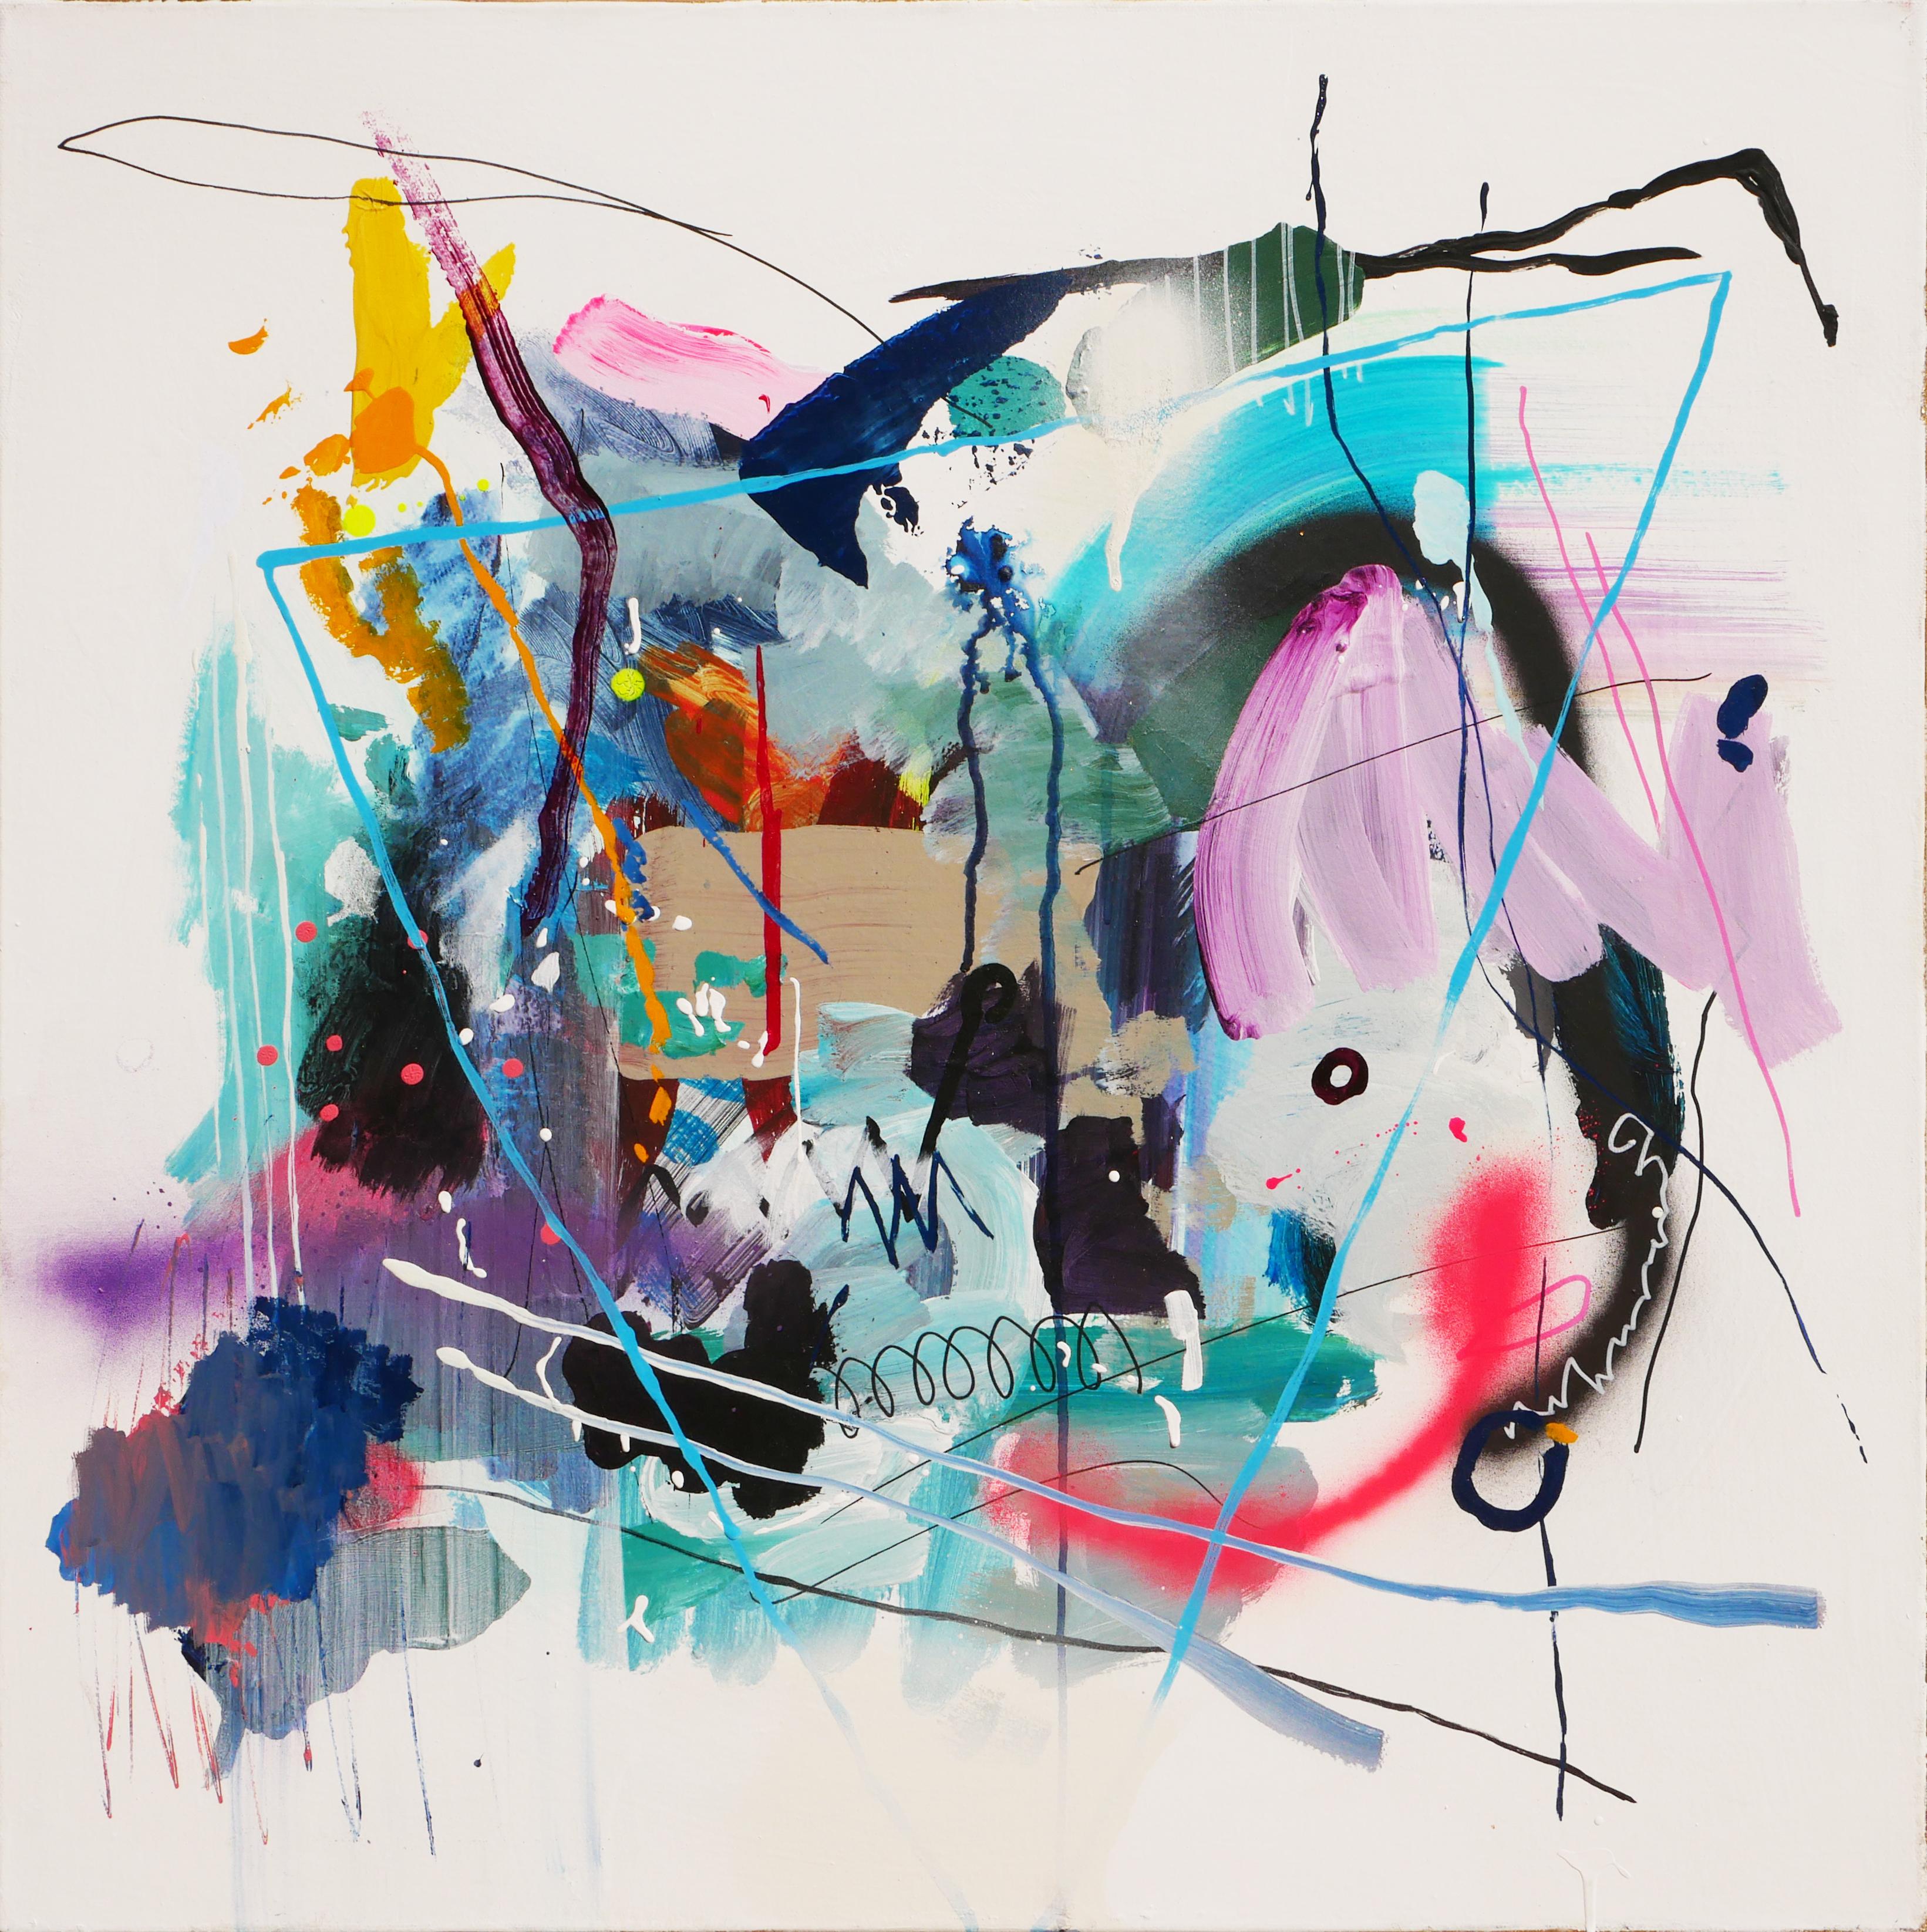 Abstract Painting David Hardaker - "Jazz Study Volume Two" - Peinture abstraite colorée en techniques mixtes